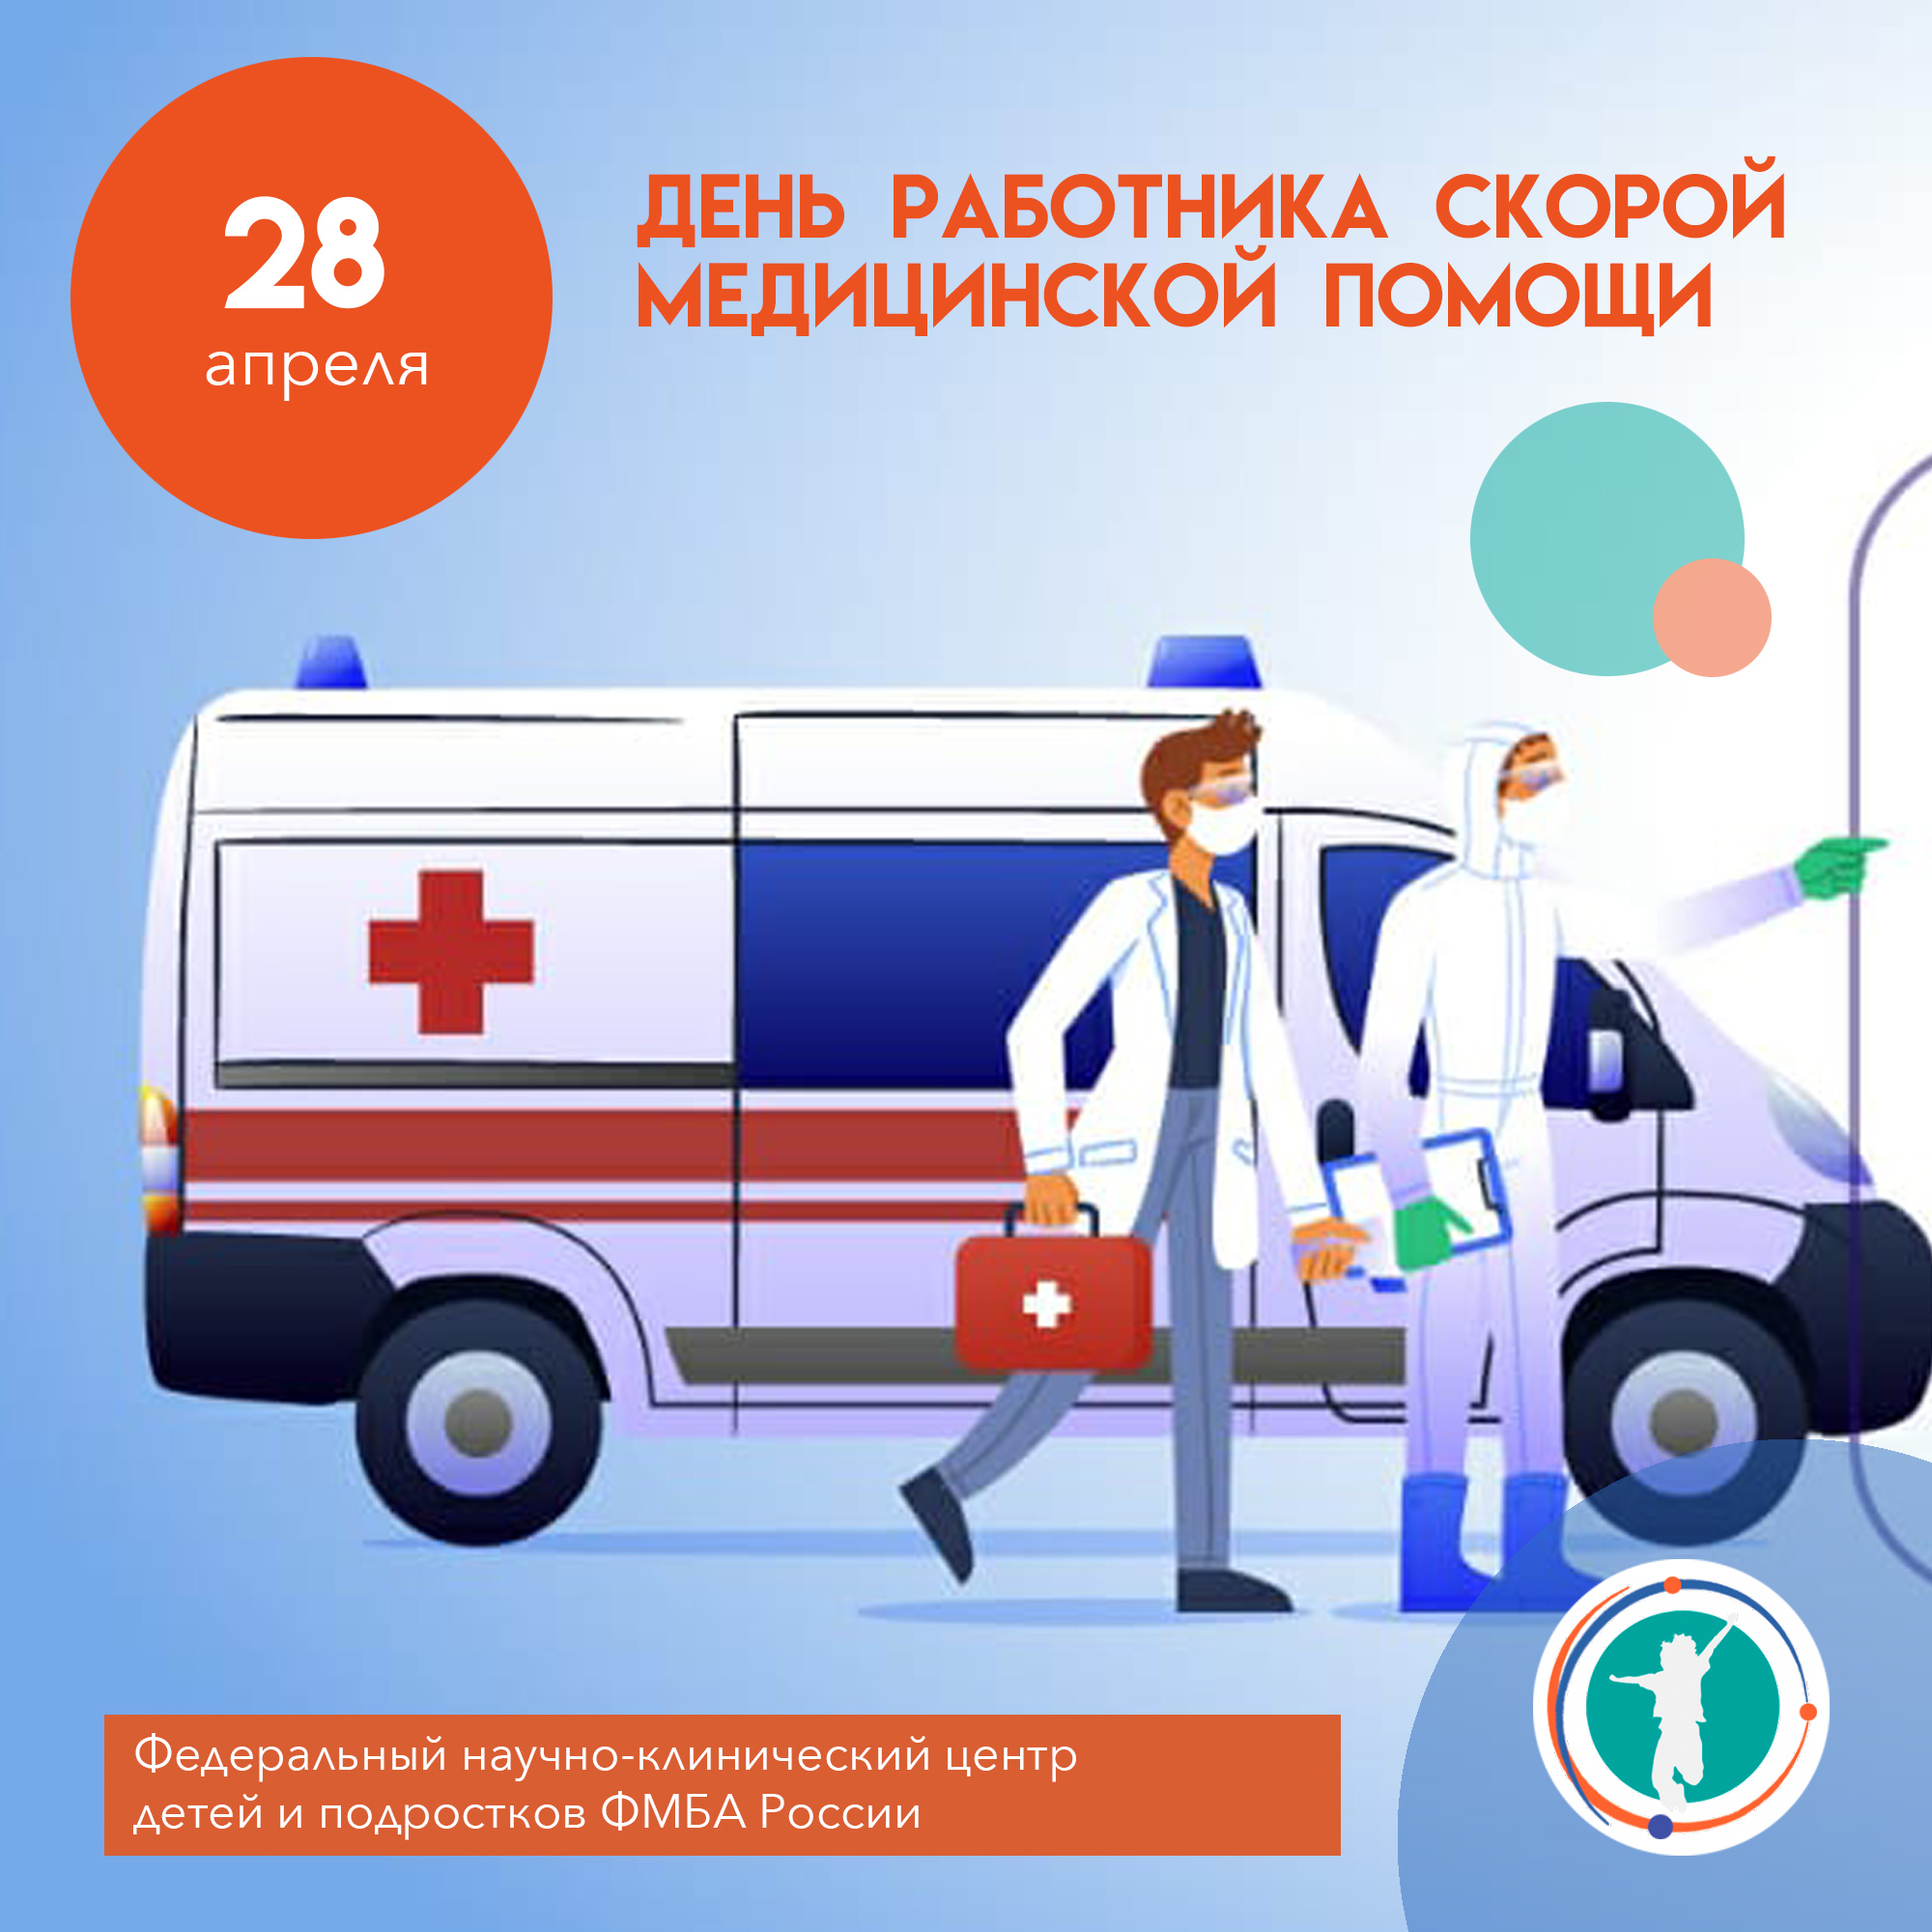 28 апреля - день работника скорой медицинской помощи